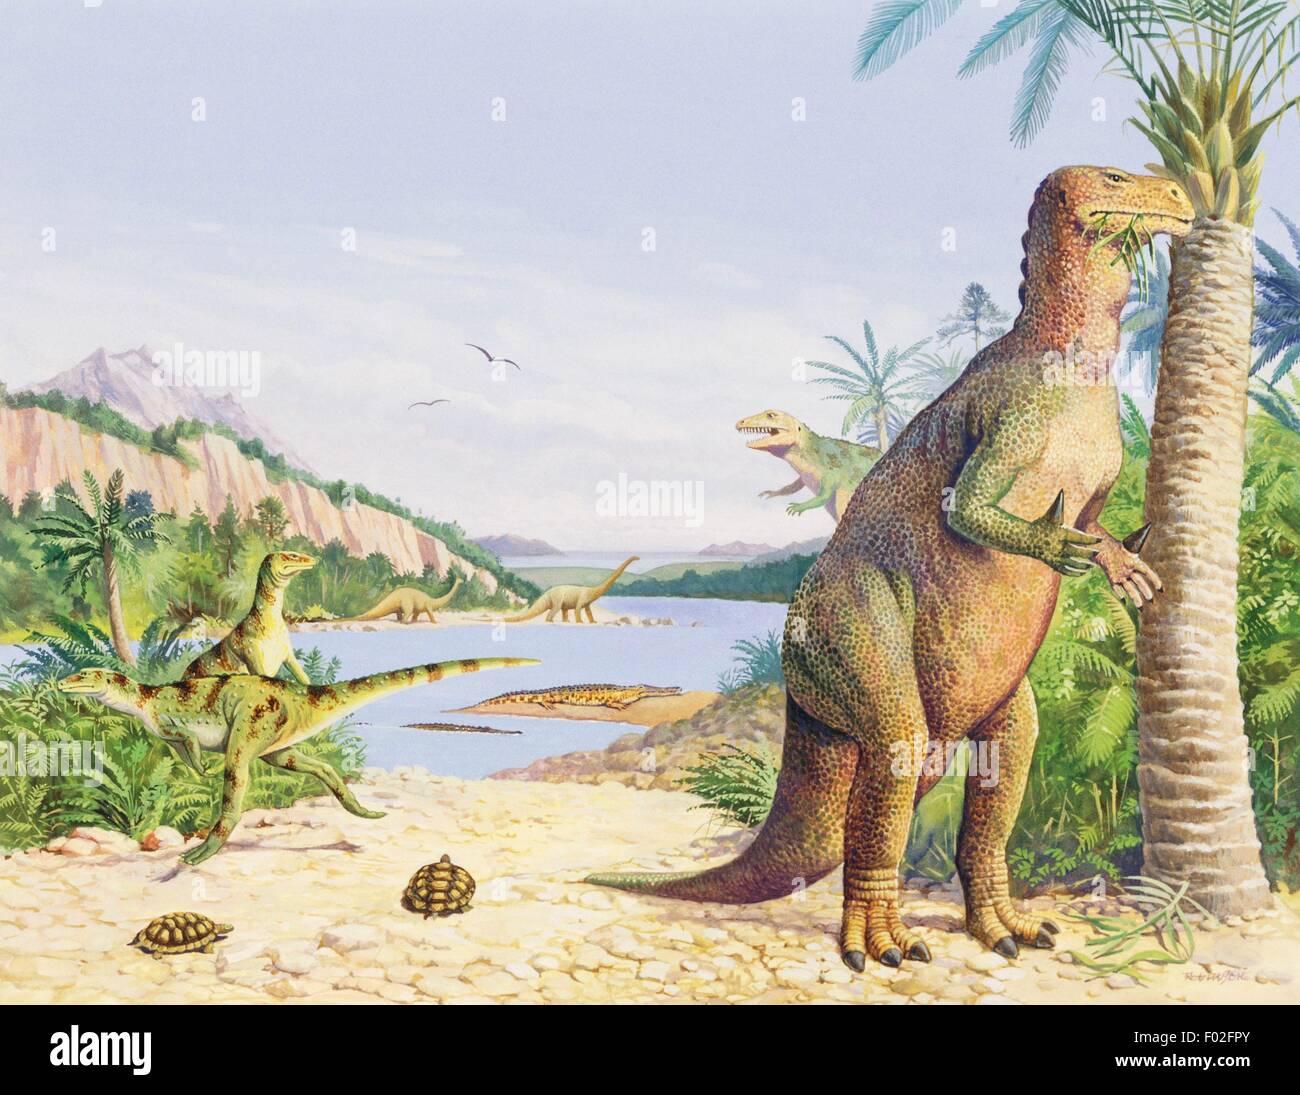 Iguanodon sp, Iguanodontidae, Early Cretaceous. Illustration. Stock Photo